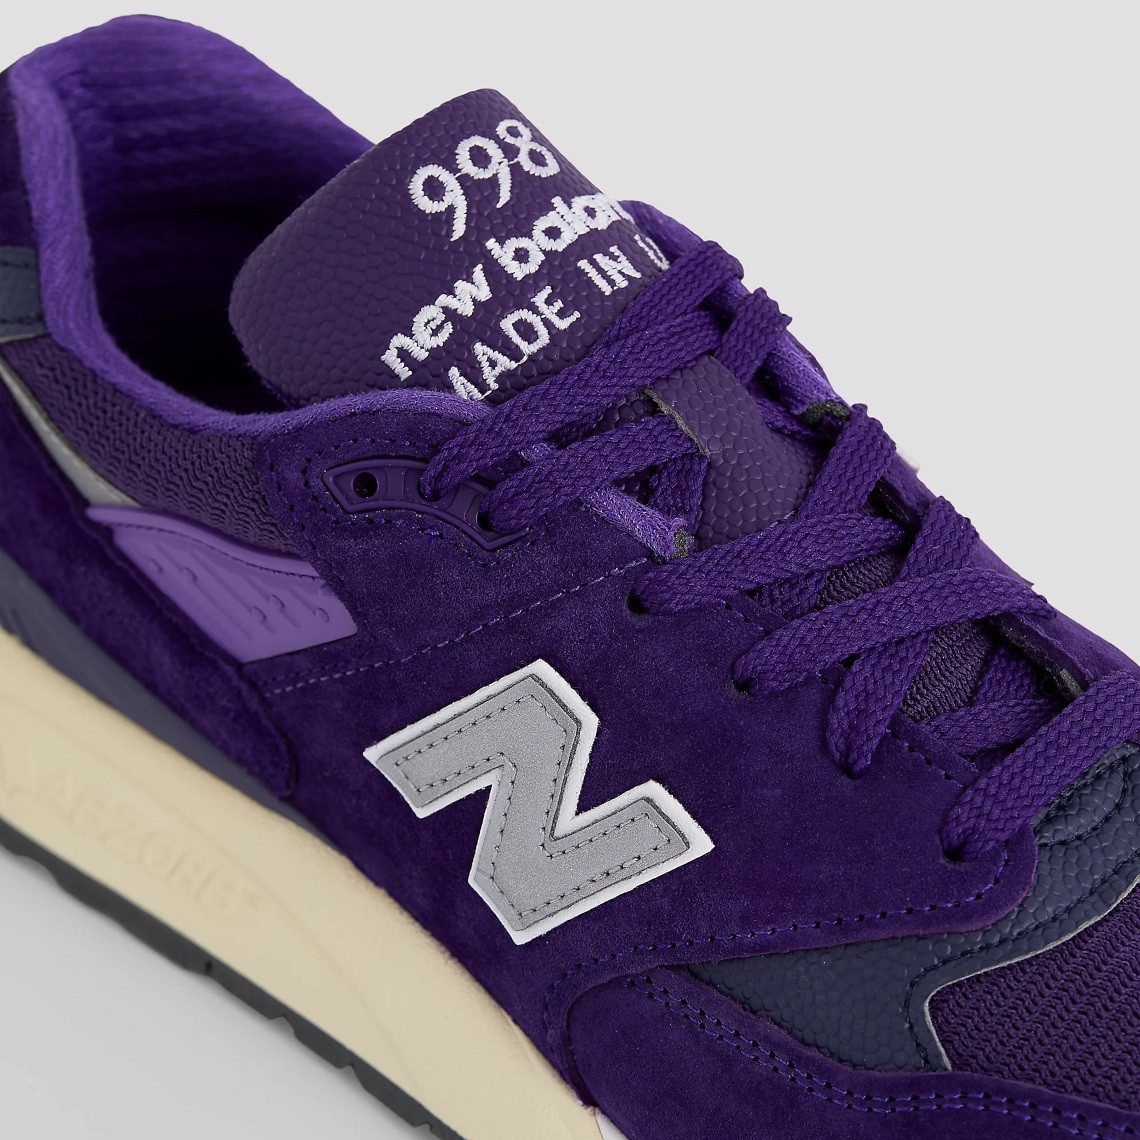 New Balance 998 Purple U998te 6